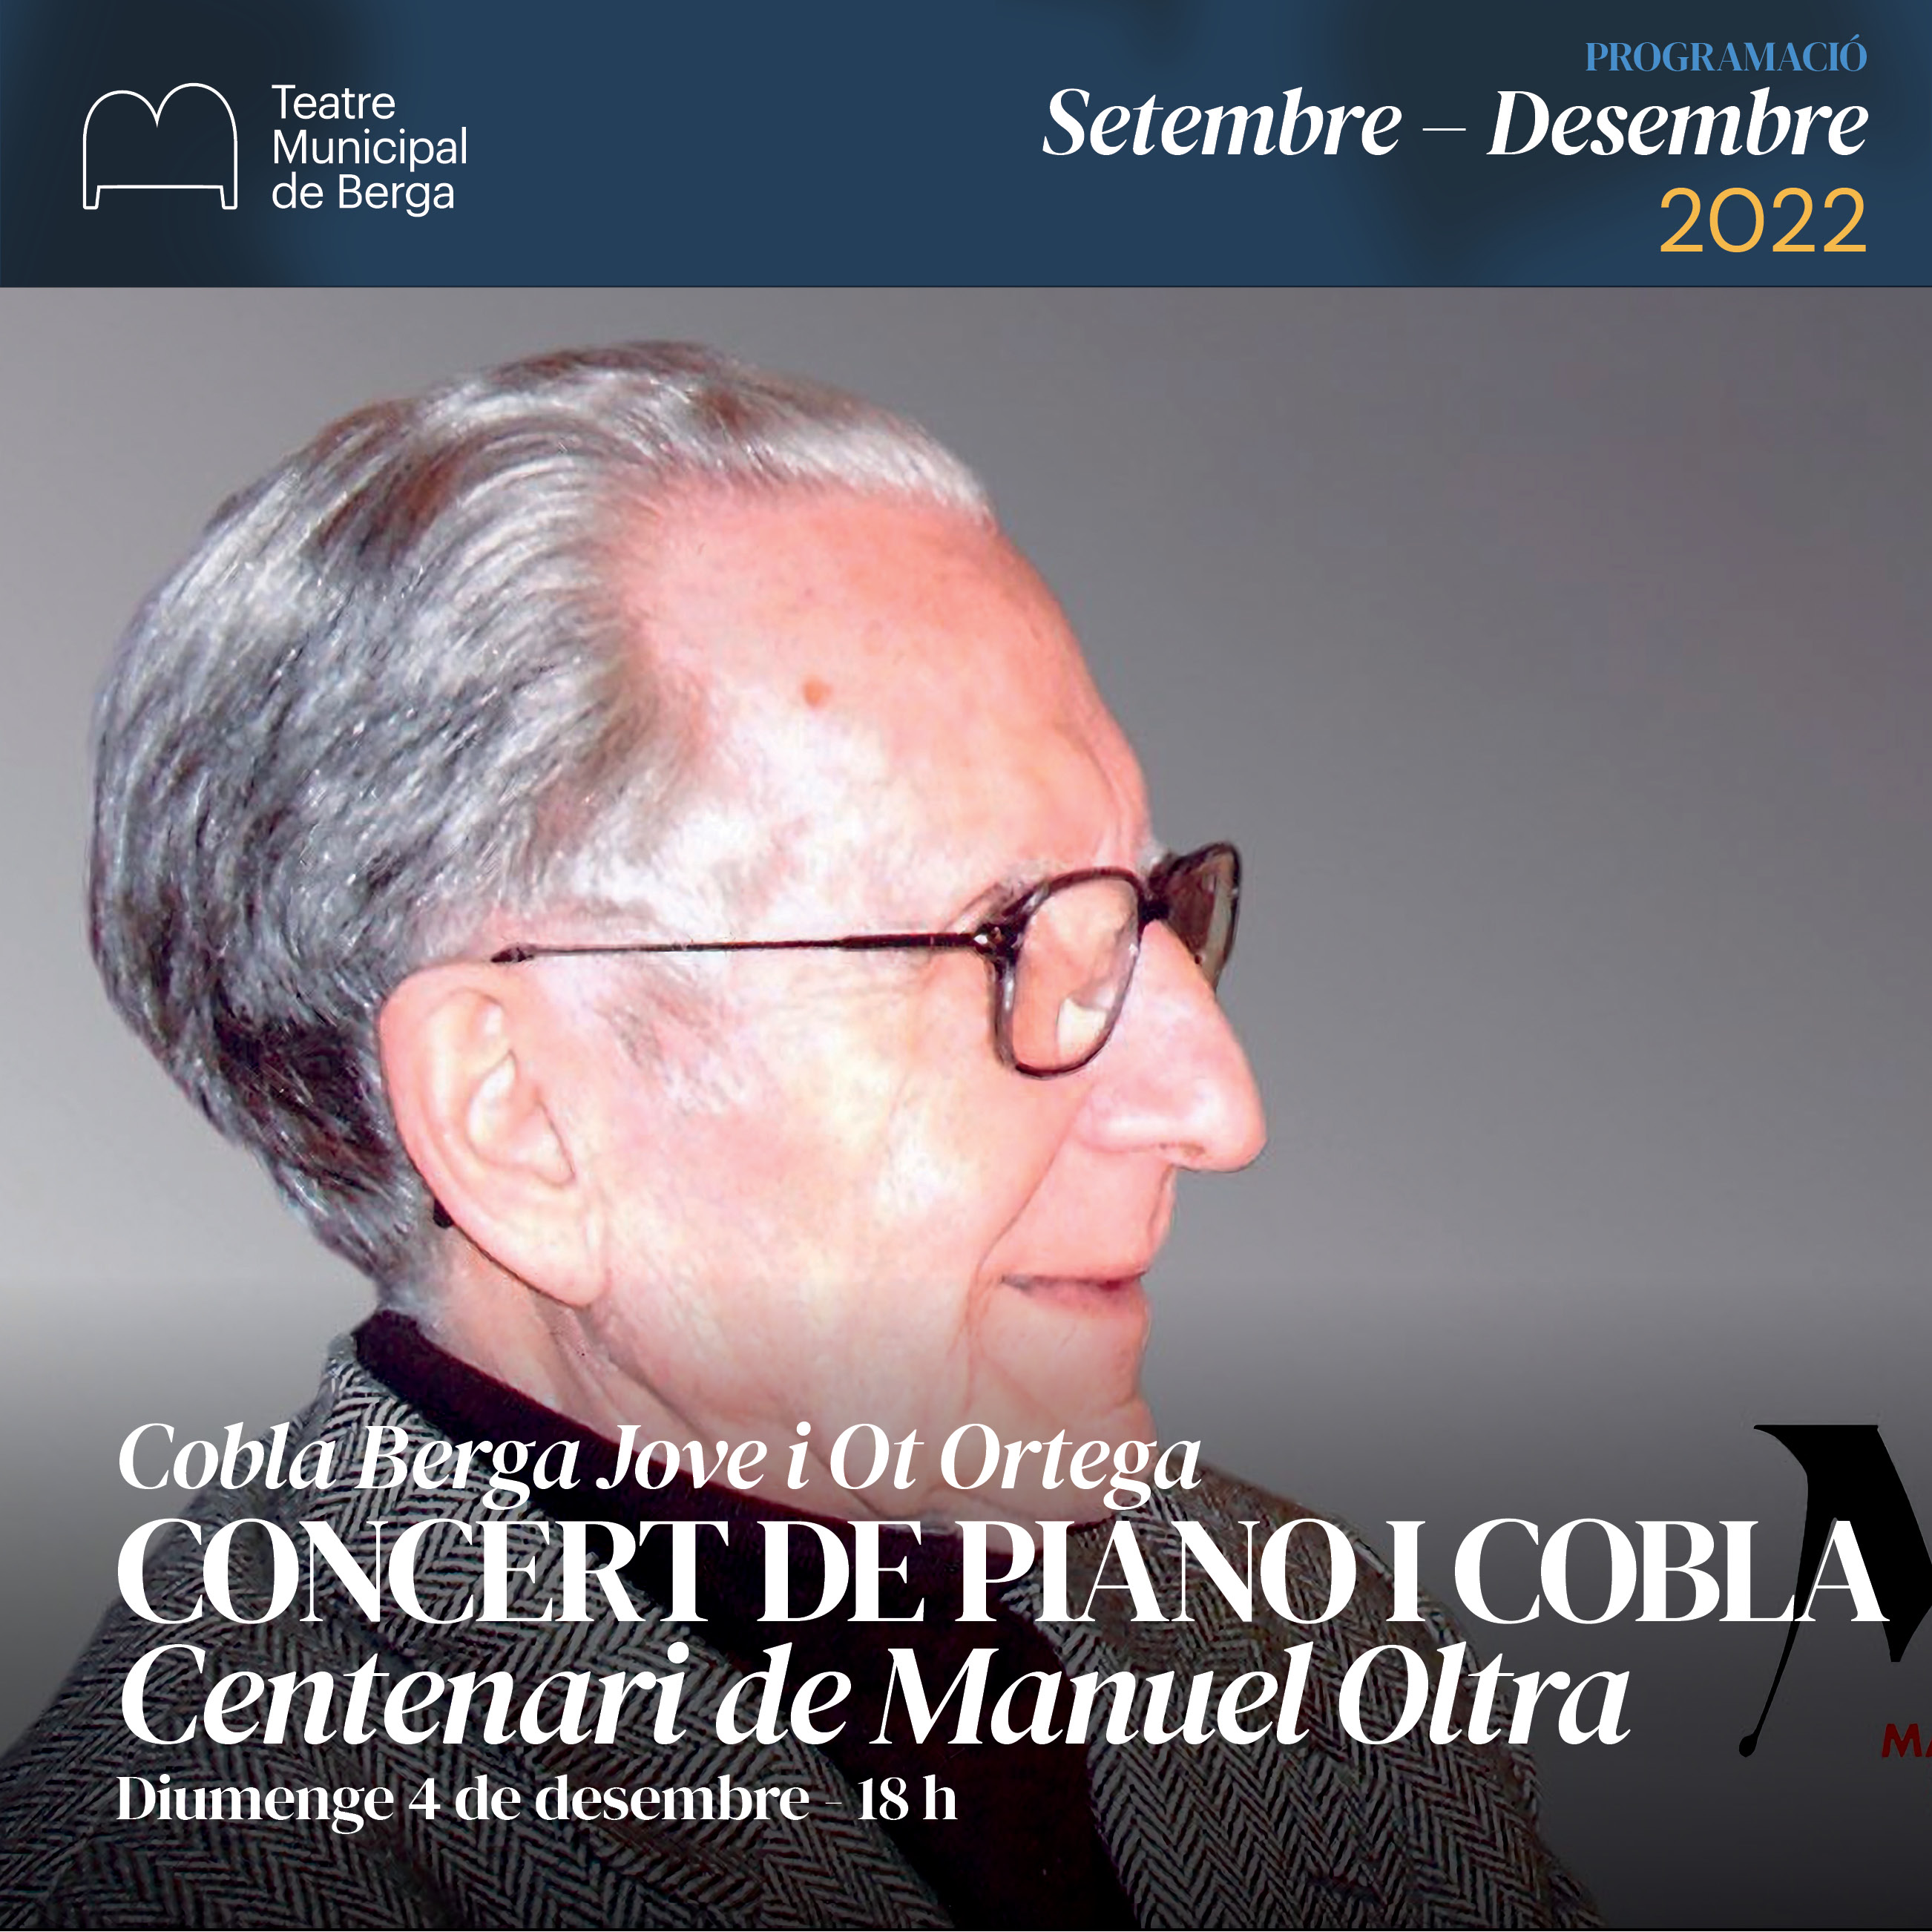 Concert: Centenari de Manuel Oltra amb Ot Ortega i la Cobla Berga Jove 